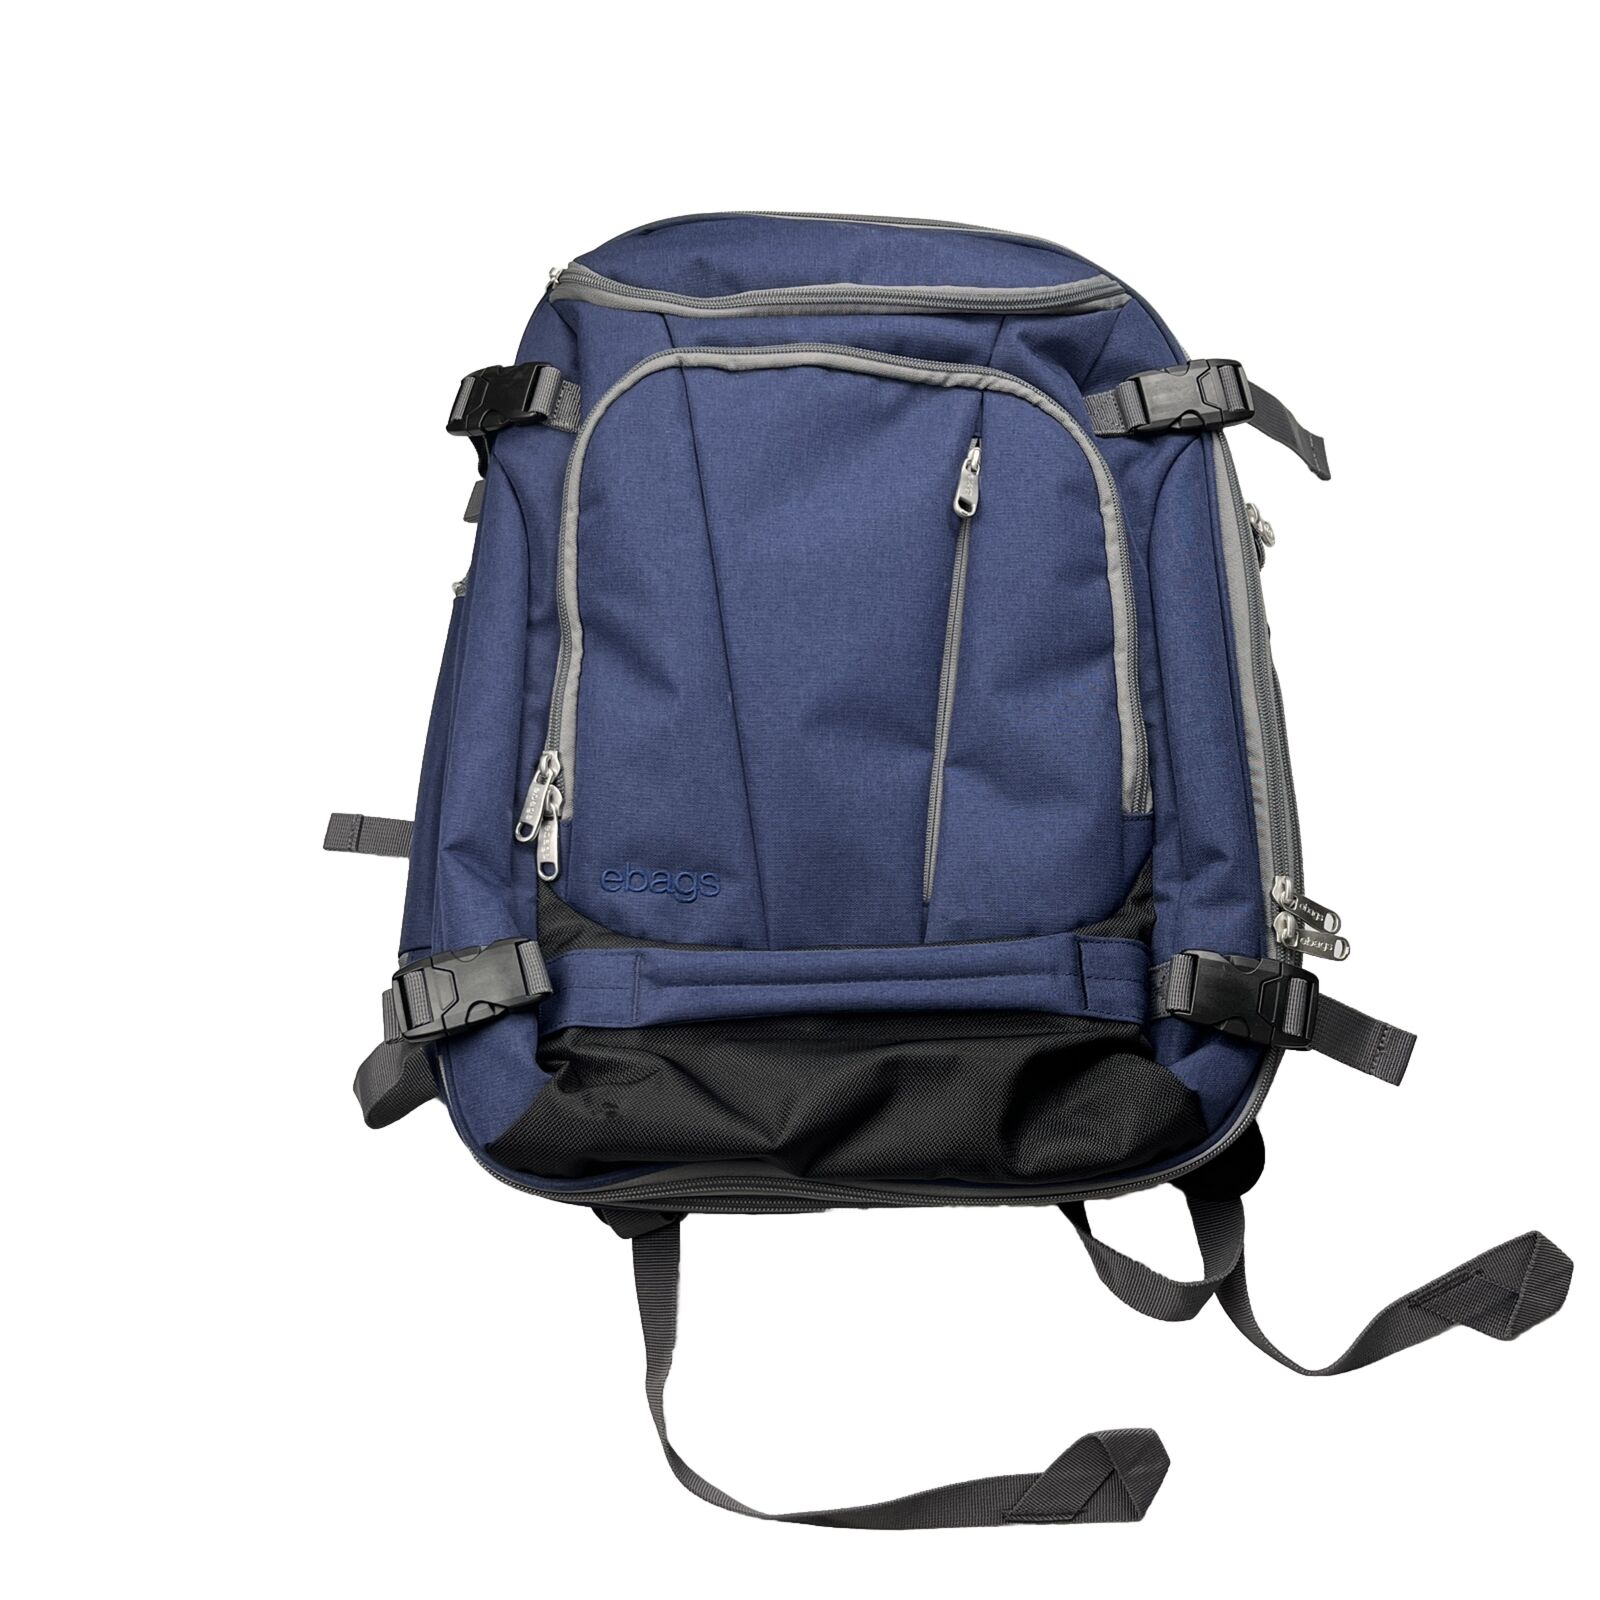 eBags Mother Lode Jr Weekender Backpack Travel Luggage Blue